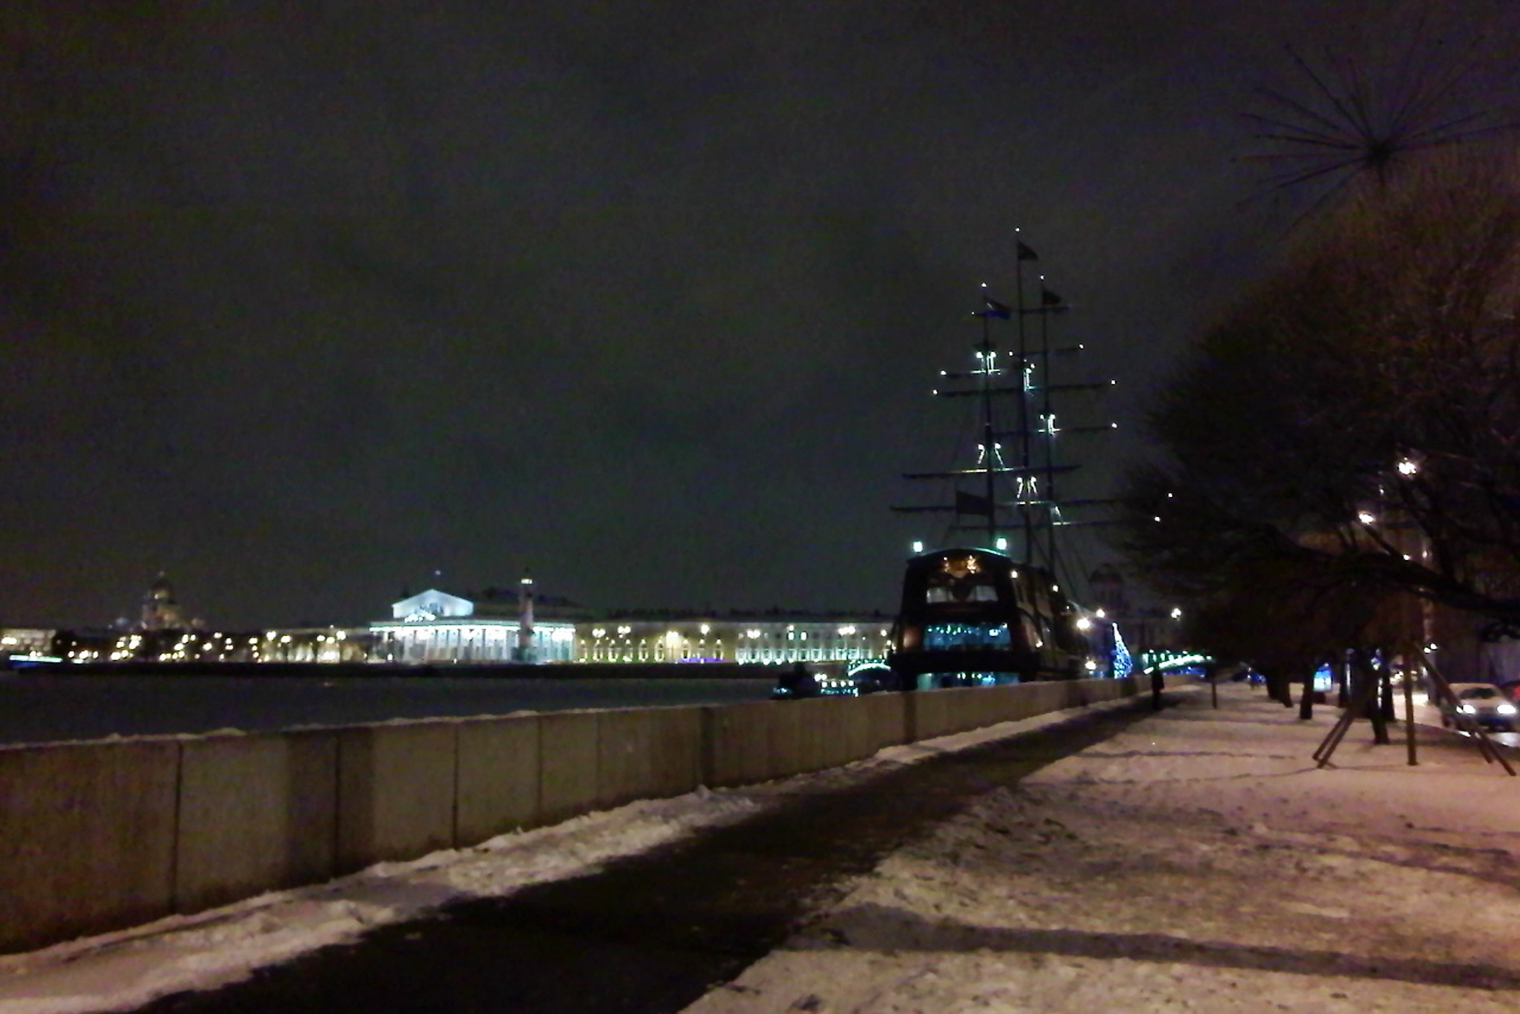 Фото времен жизни в коммуналке на Петроградке. По вечерам я ходила гулять к Петропавловской крепости и по набережным